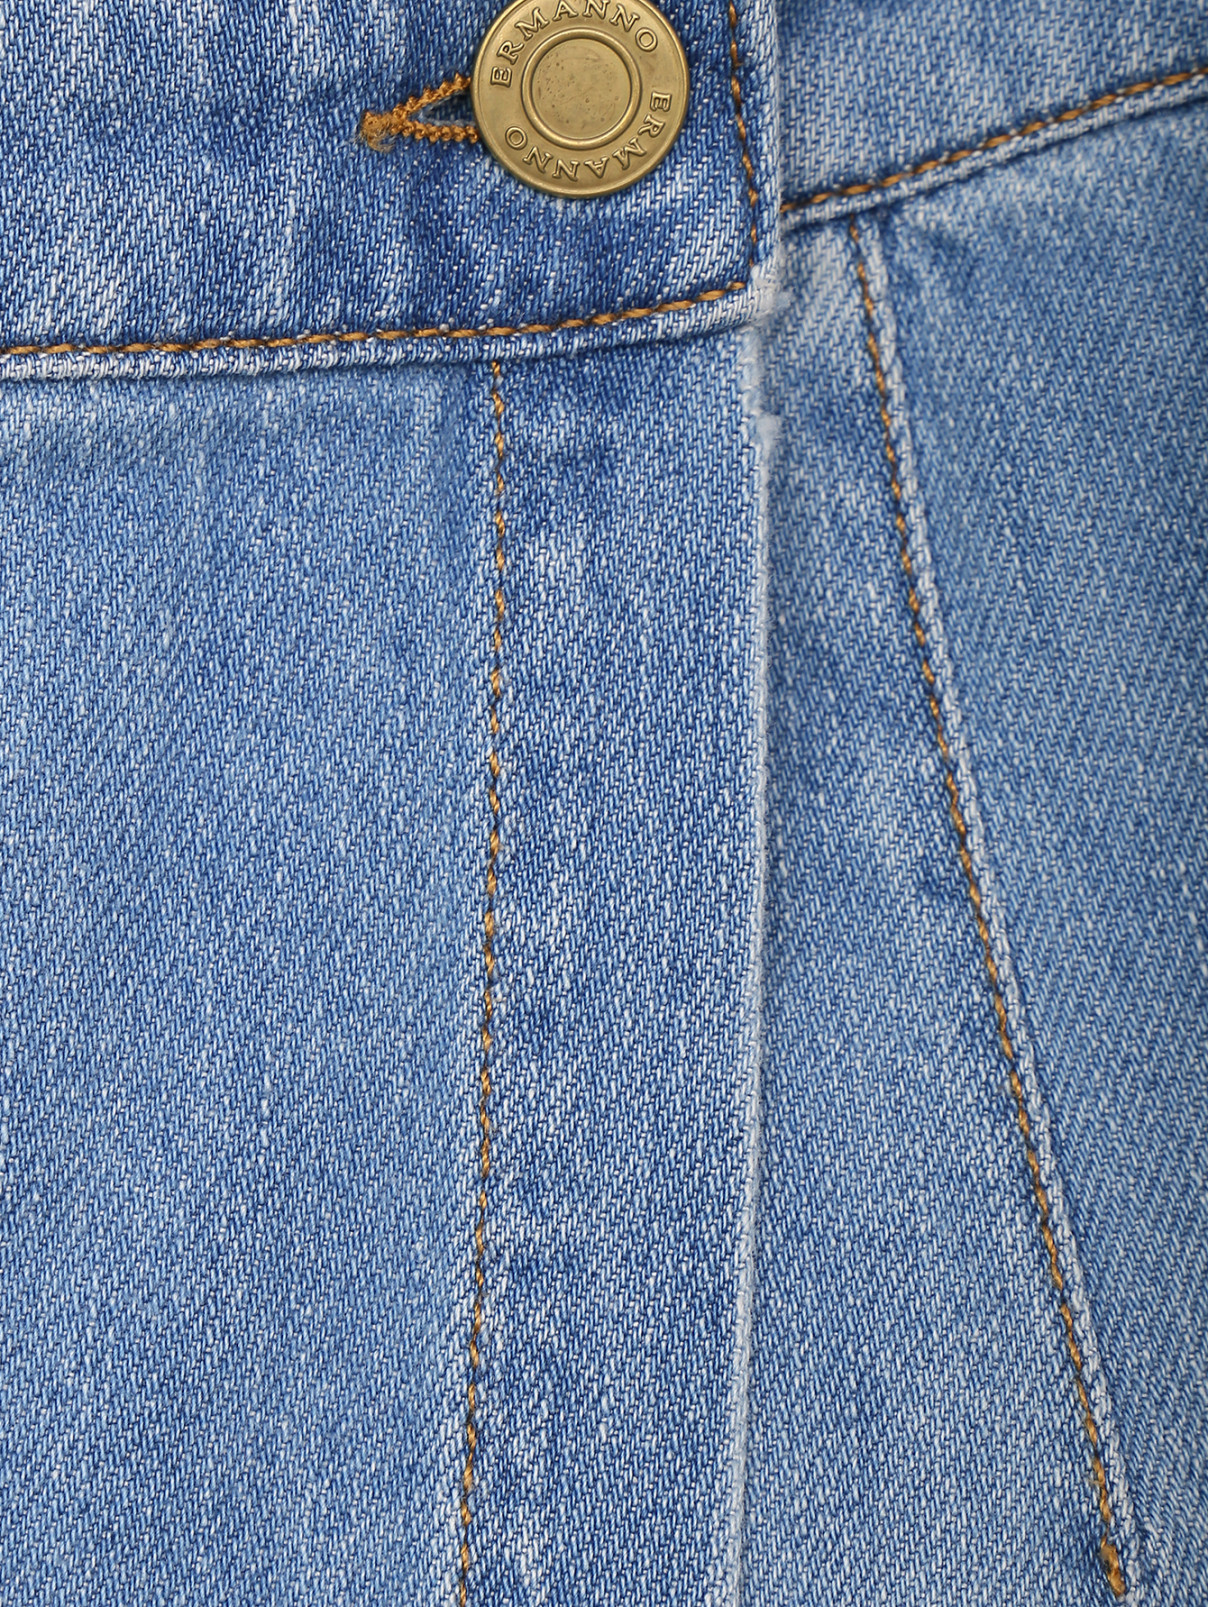 Джинсовые шорты-юбка с кружевной отделкой Ermanno Firenze  –  Деталь  – Цвет:  Синий